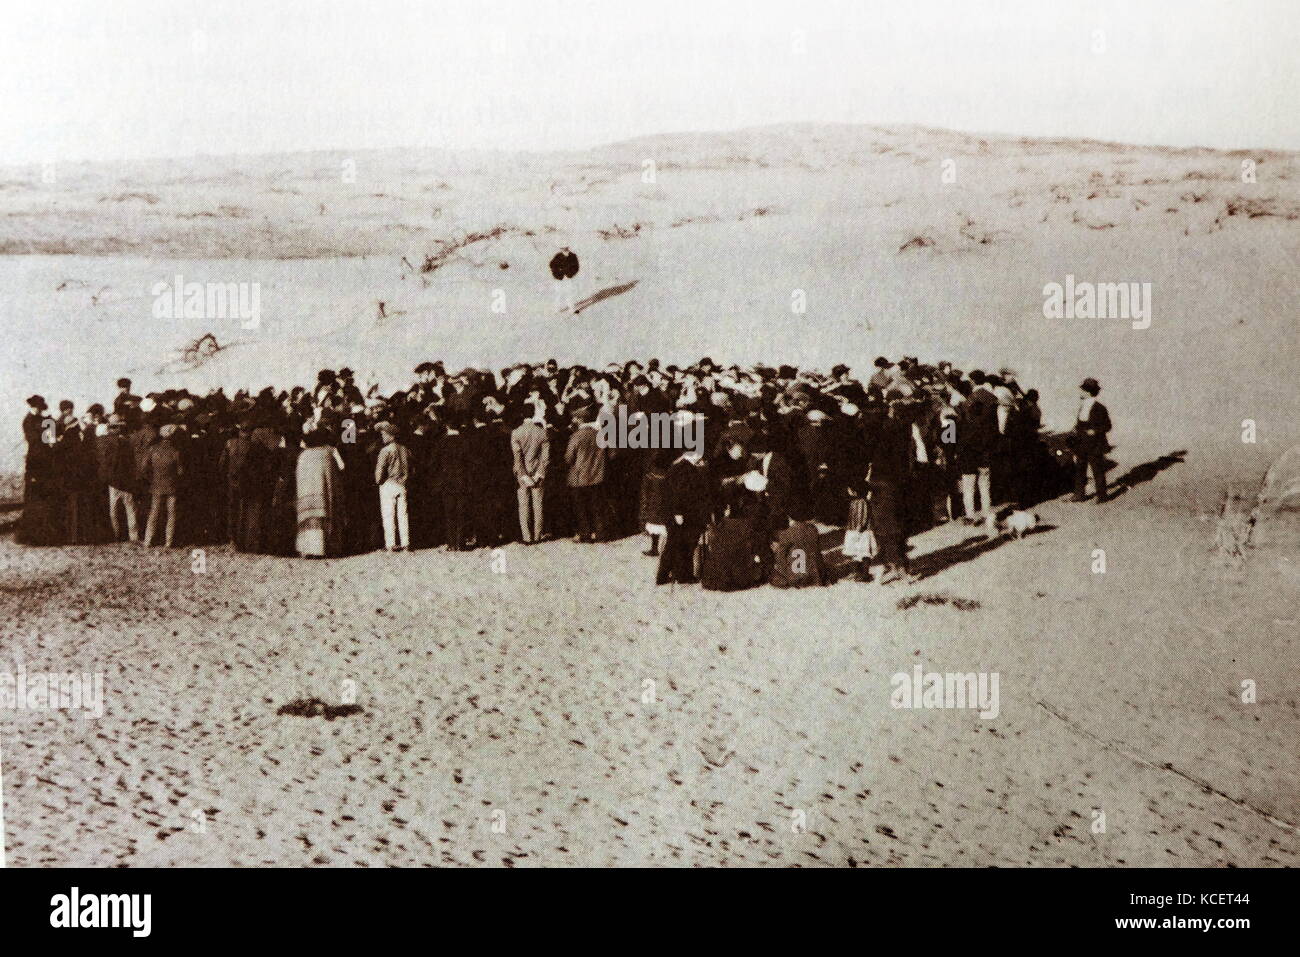 Tirage au sort pour la terre par les fondateurs de la ville israélienne de Tel Aviv, recueillir sur le site de la fondation de la ville près de Jaffa, la Palestine. 1909 Banque D'Images